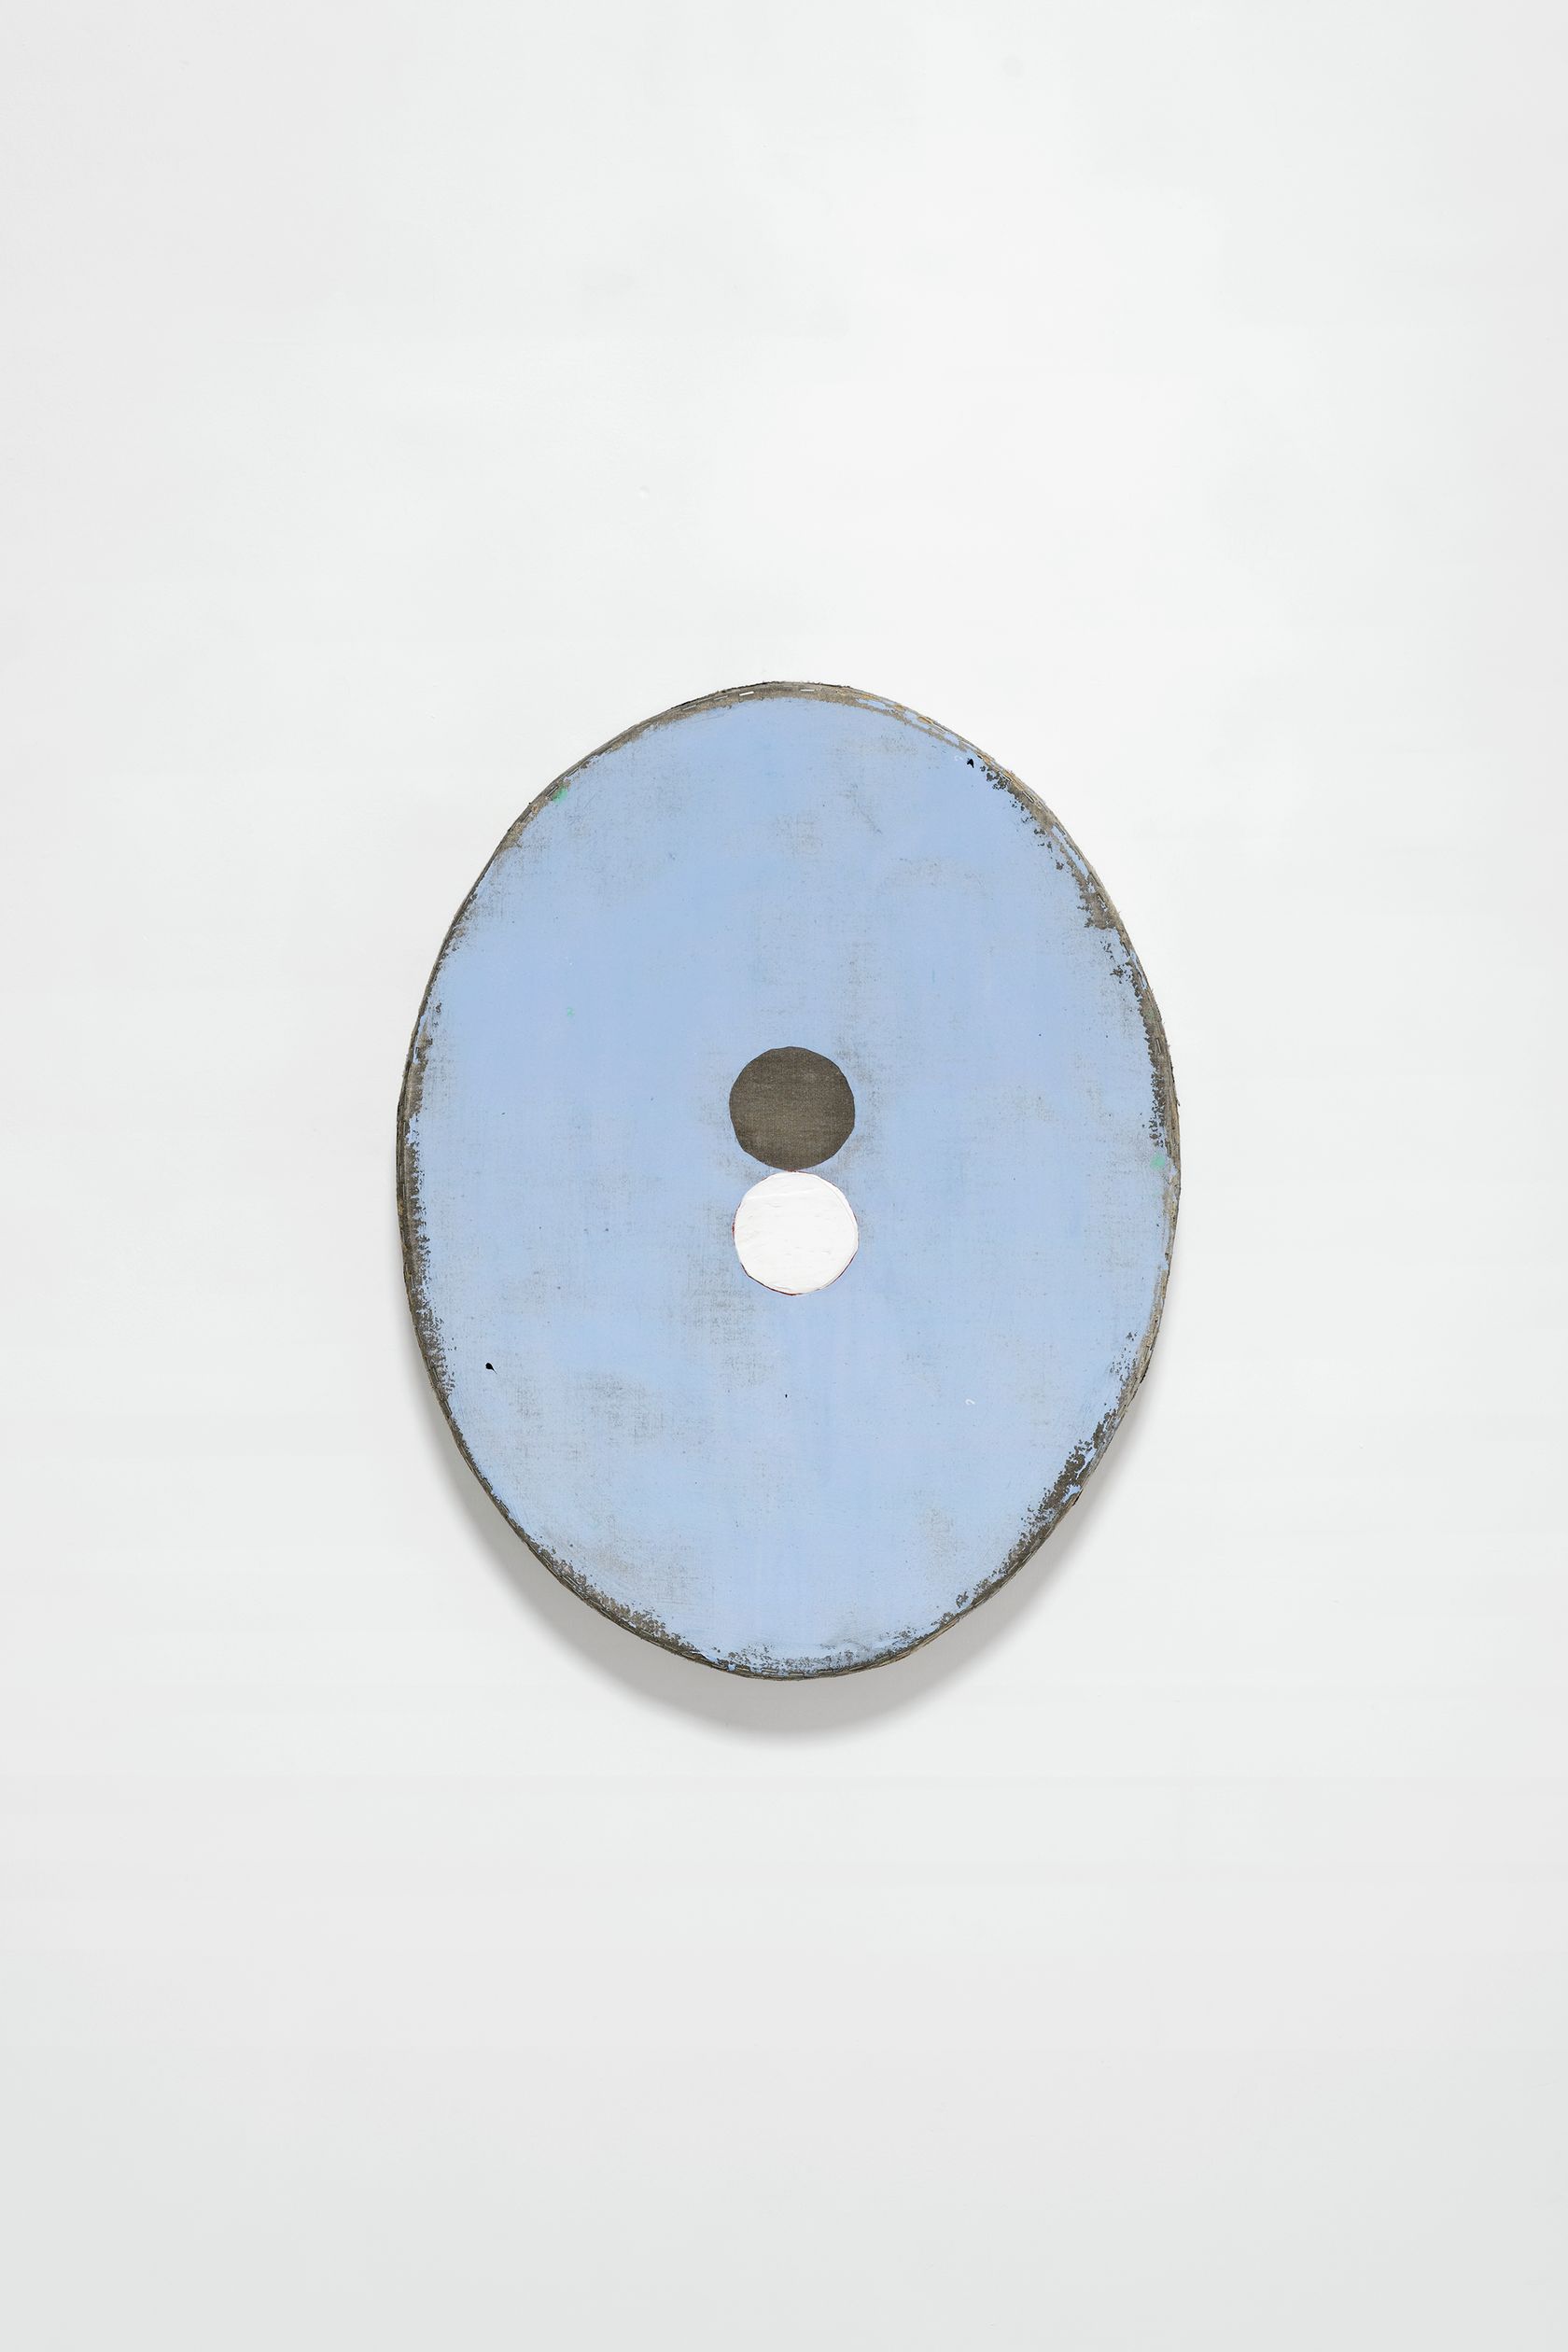 Otis Jones, Blue With Gray and White Circles, 2022 Acrylique sur toile sur panneau de bois78.5 × 62 × 8 cm / 30 7/8 × 24 3/8 × 3 in.